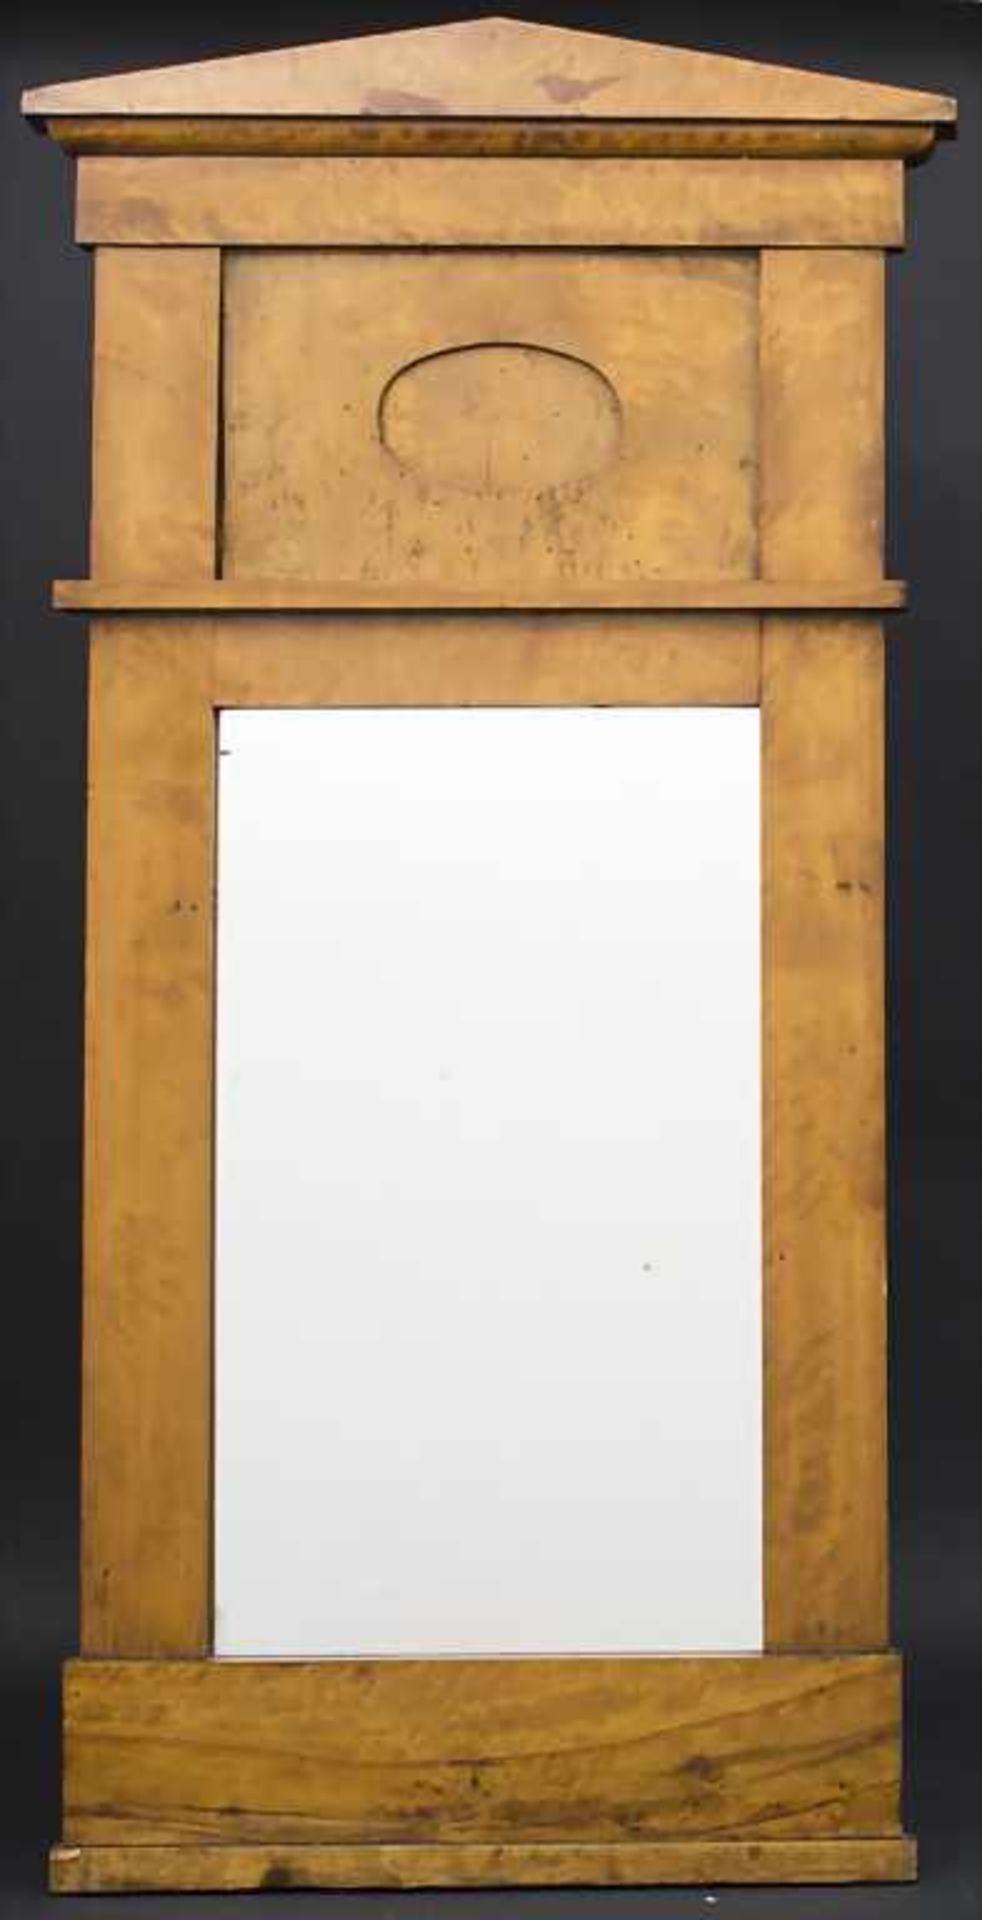 Biedermeier-Spiegel / A Biedermeier mirror, Mitte 19. Jh. Material: Nussbaum, furniert, Maße: H. 110